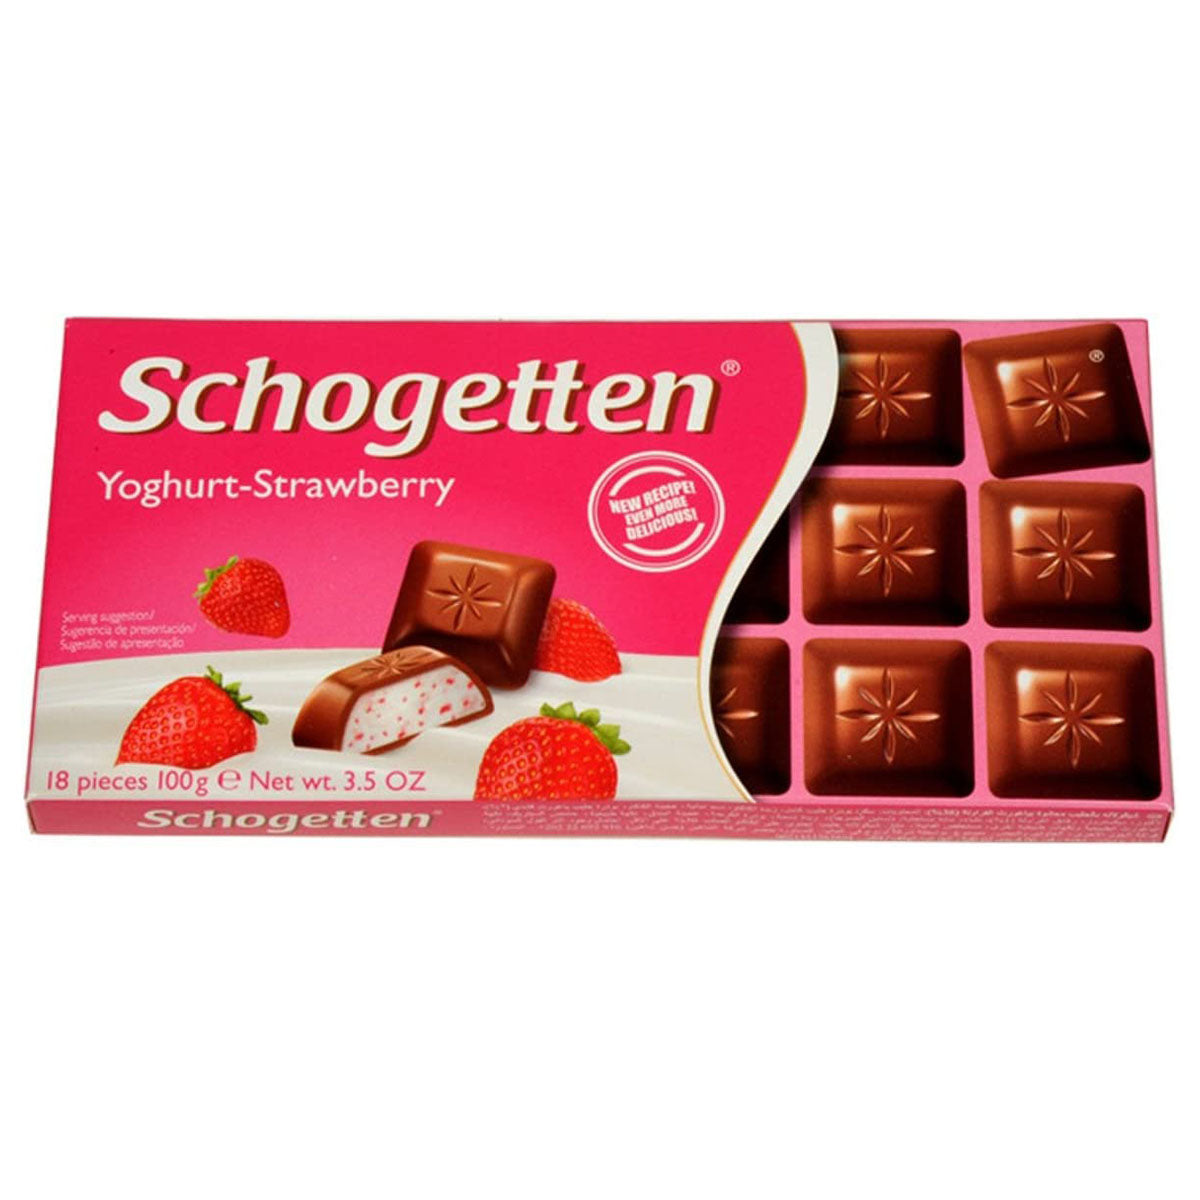 Schogetten - Yoghurt Strawberry - 100g - Continental Food Store